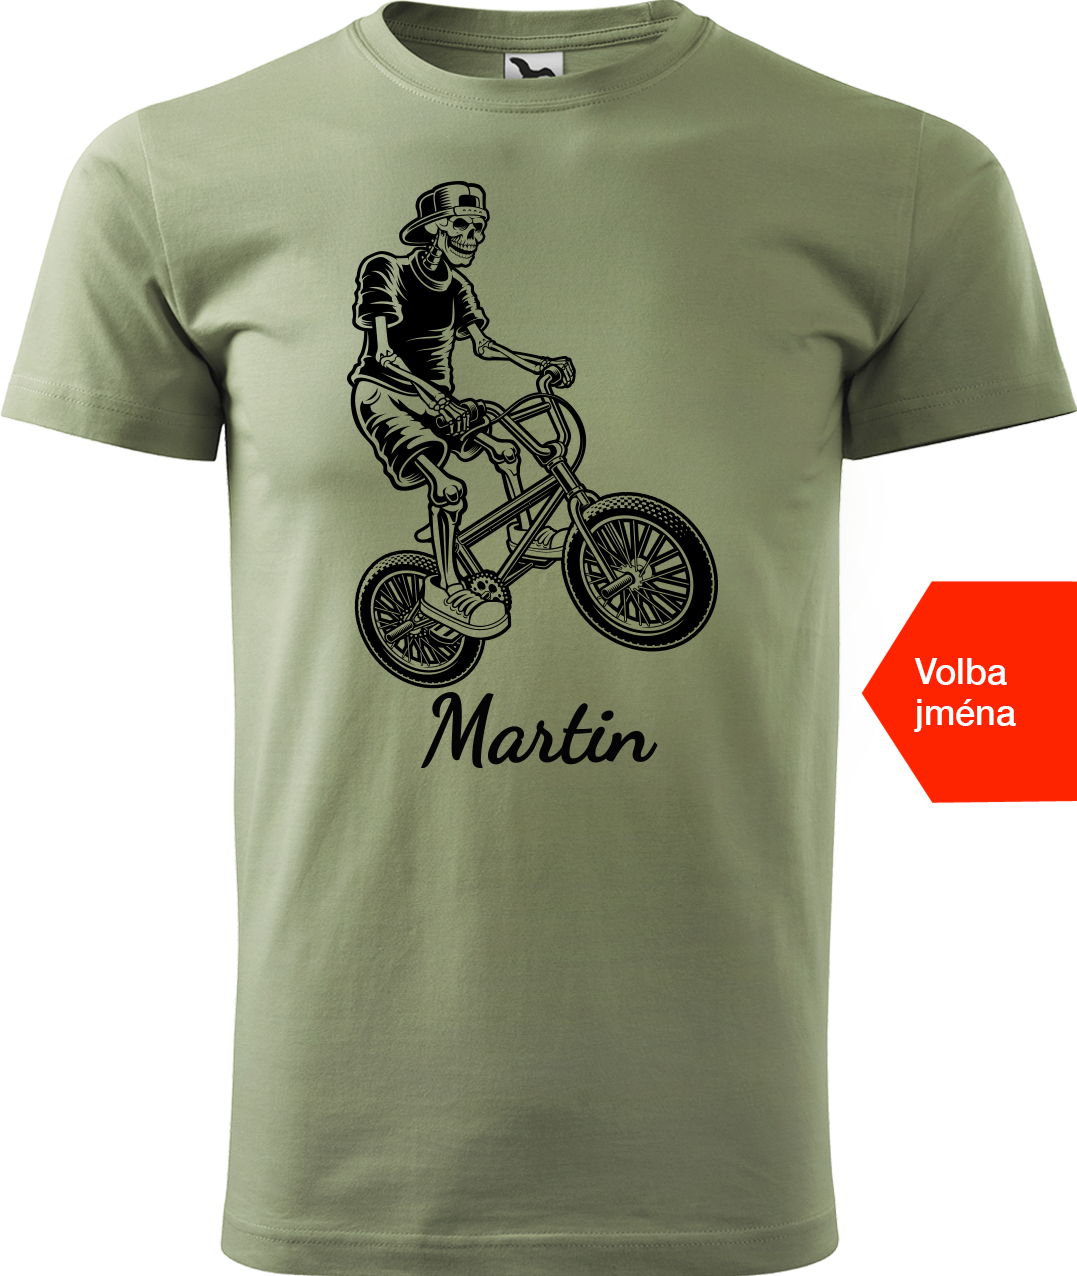 Pánské tričko s kolem a jménem - Trial Bike Velikost: XL, Barva: Světlá khaki (28)